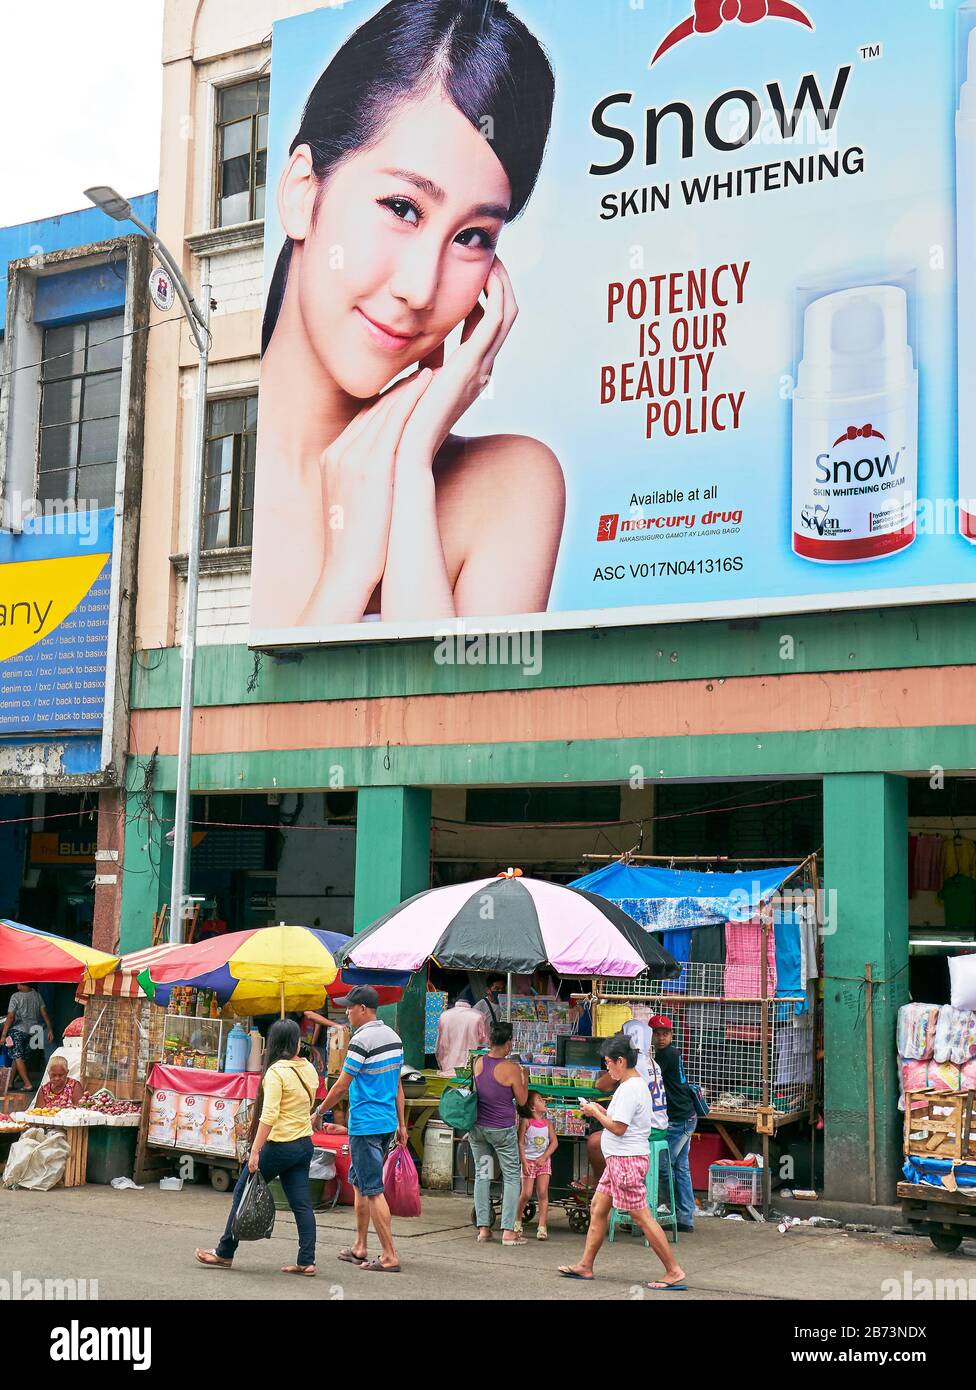 Divisoria Market, Manila, Philippinen: Plakat, auf dem junge asiaten für Produkte zur Hautaufhellung werben, Filipinos vorbeiziehen Stockfoto